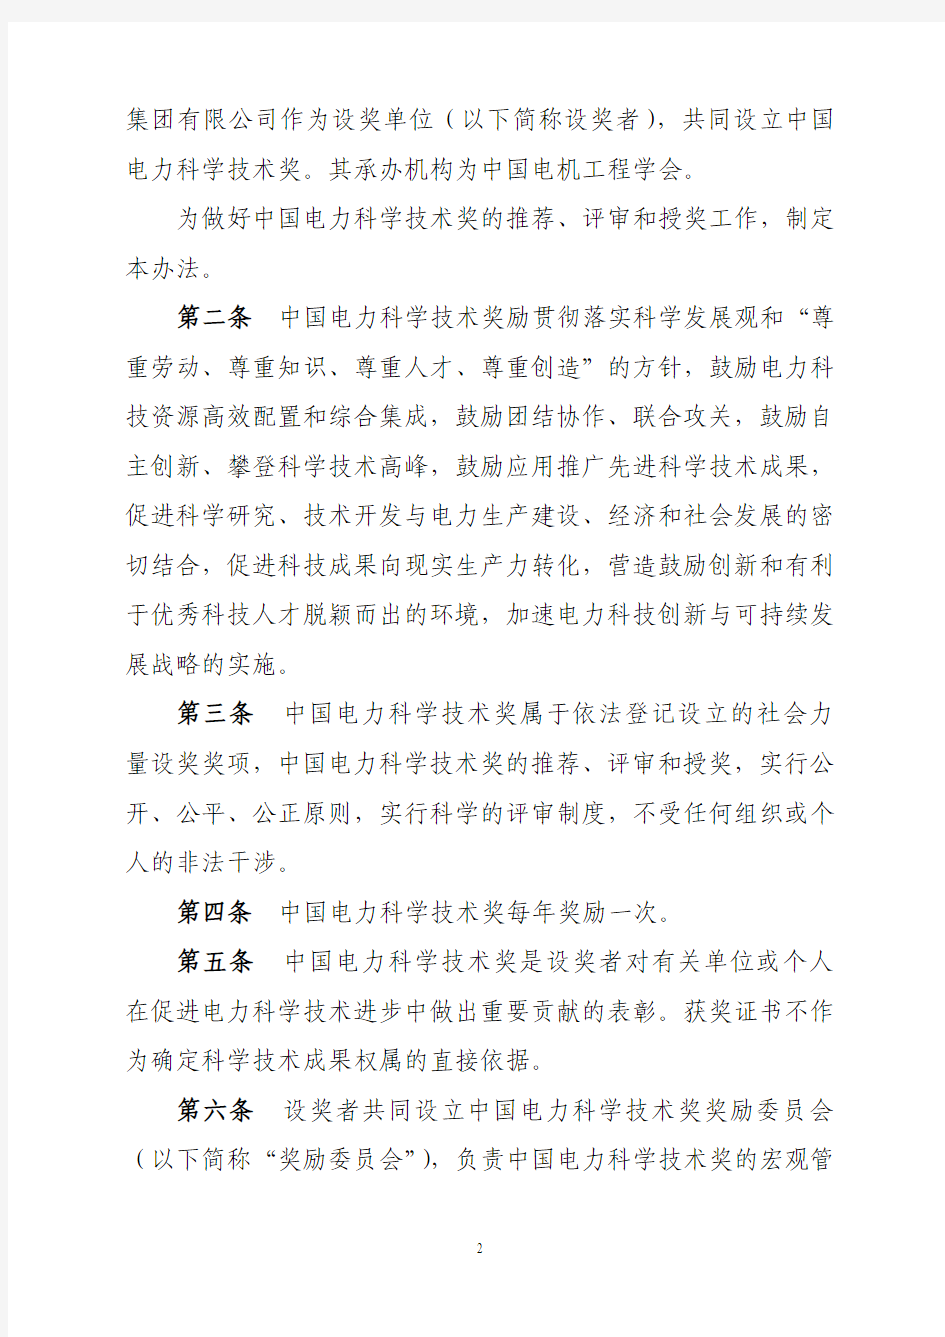 中国电力科学技术奖励办法.pdf